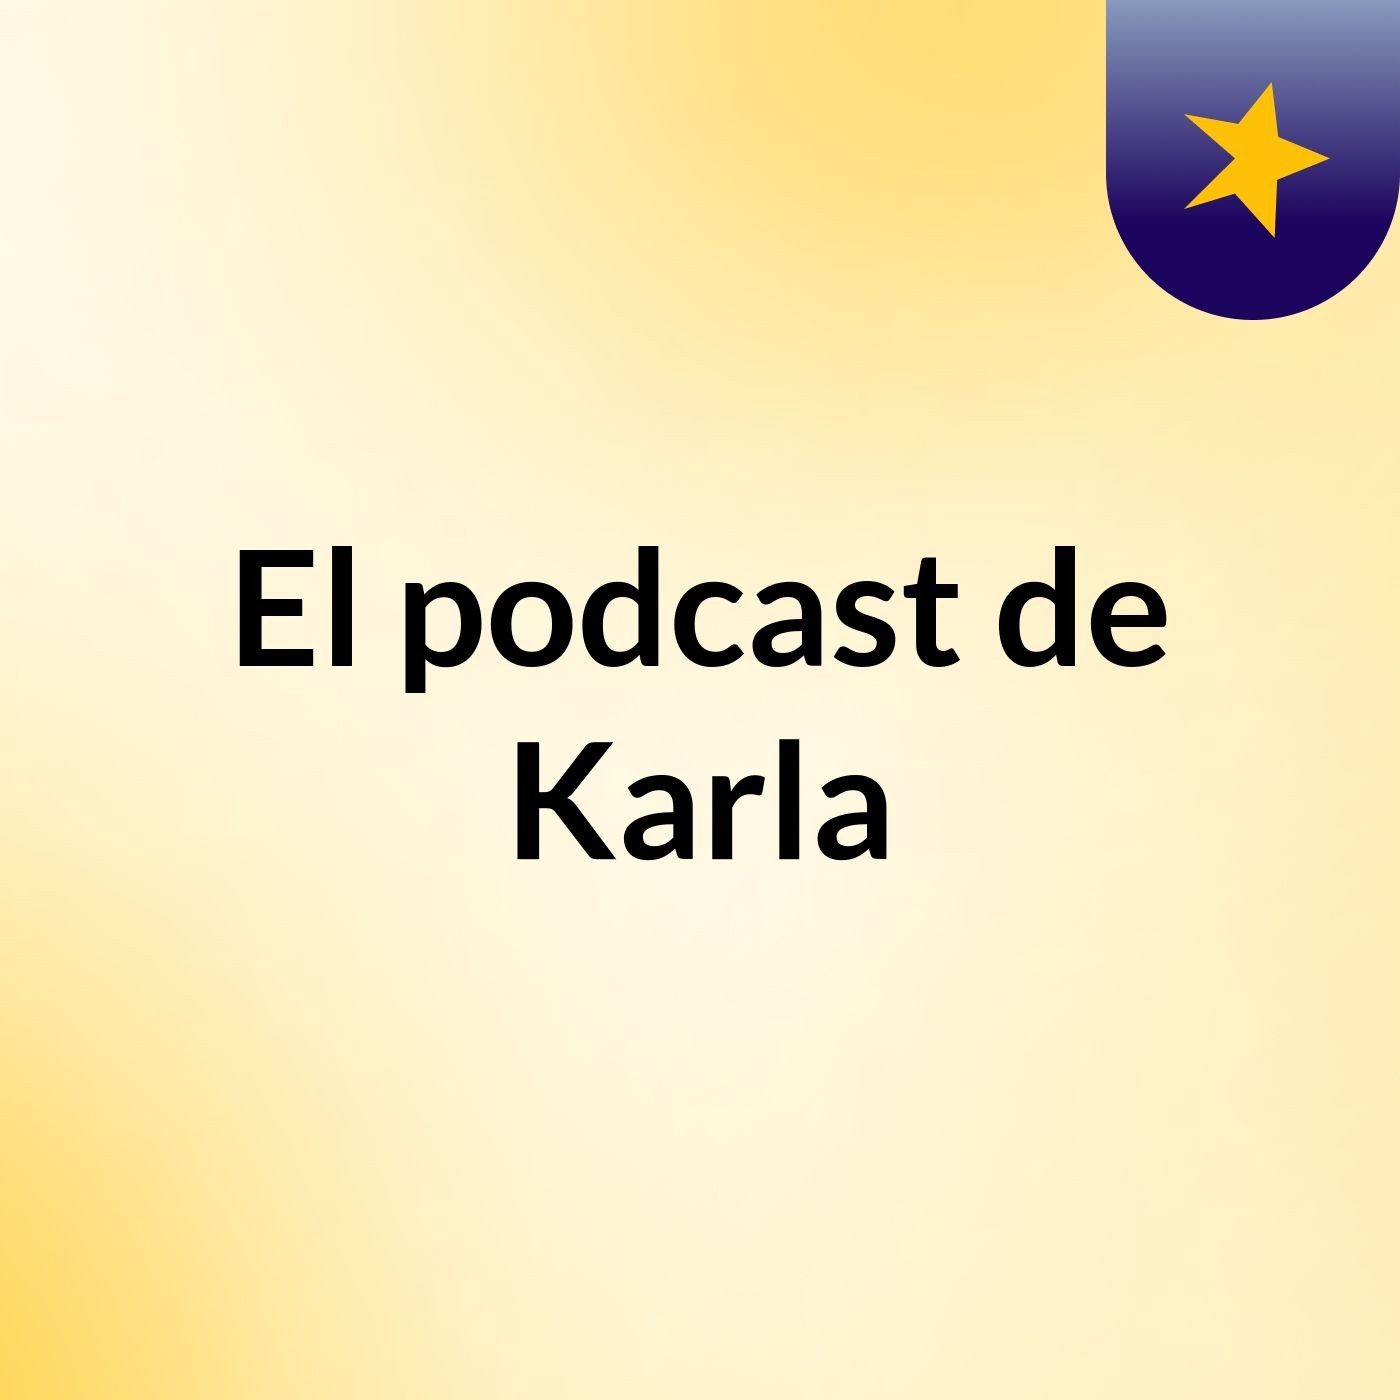 El podcast de Karla